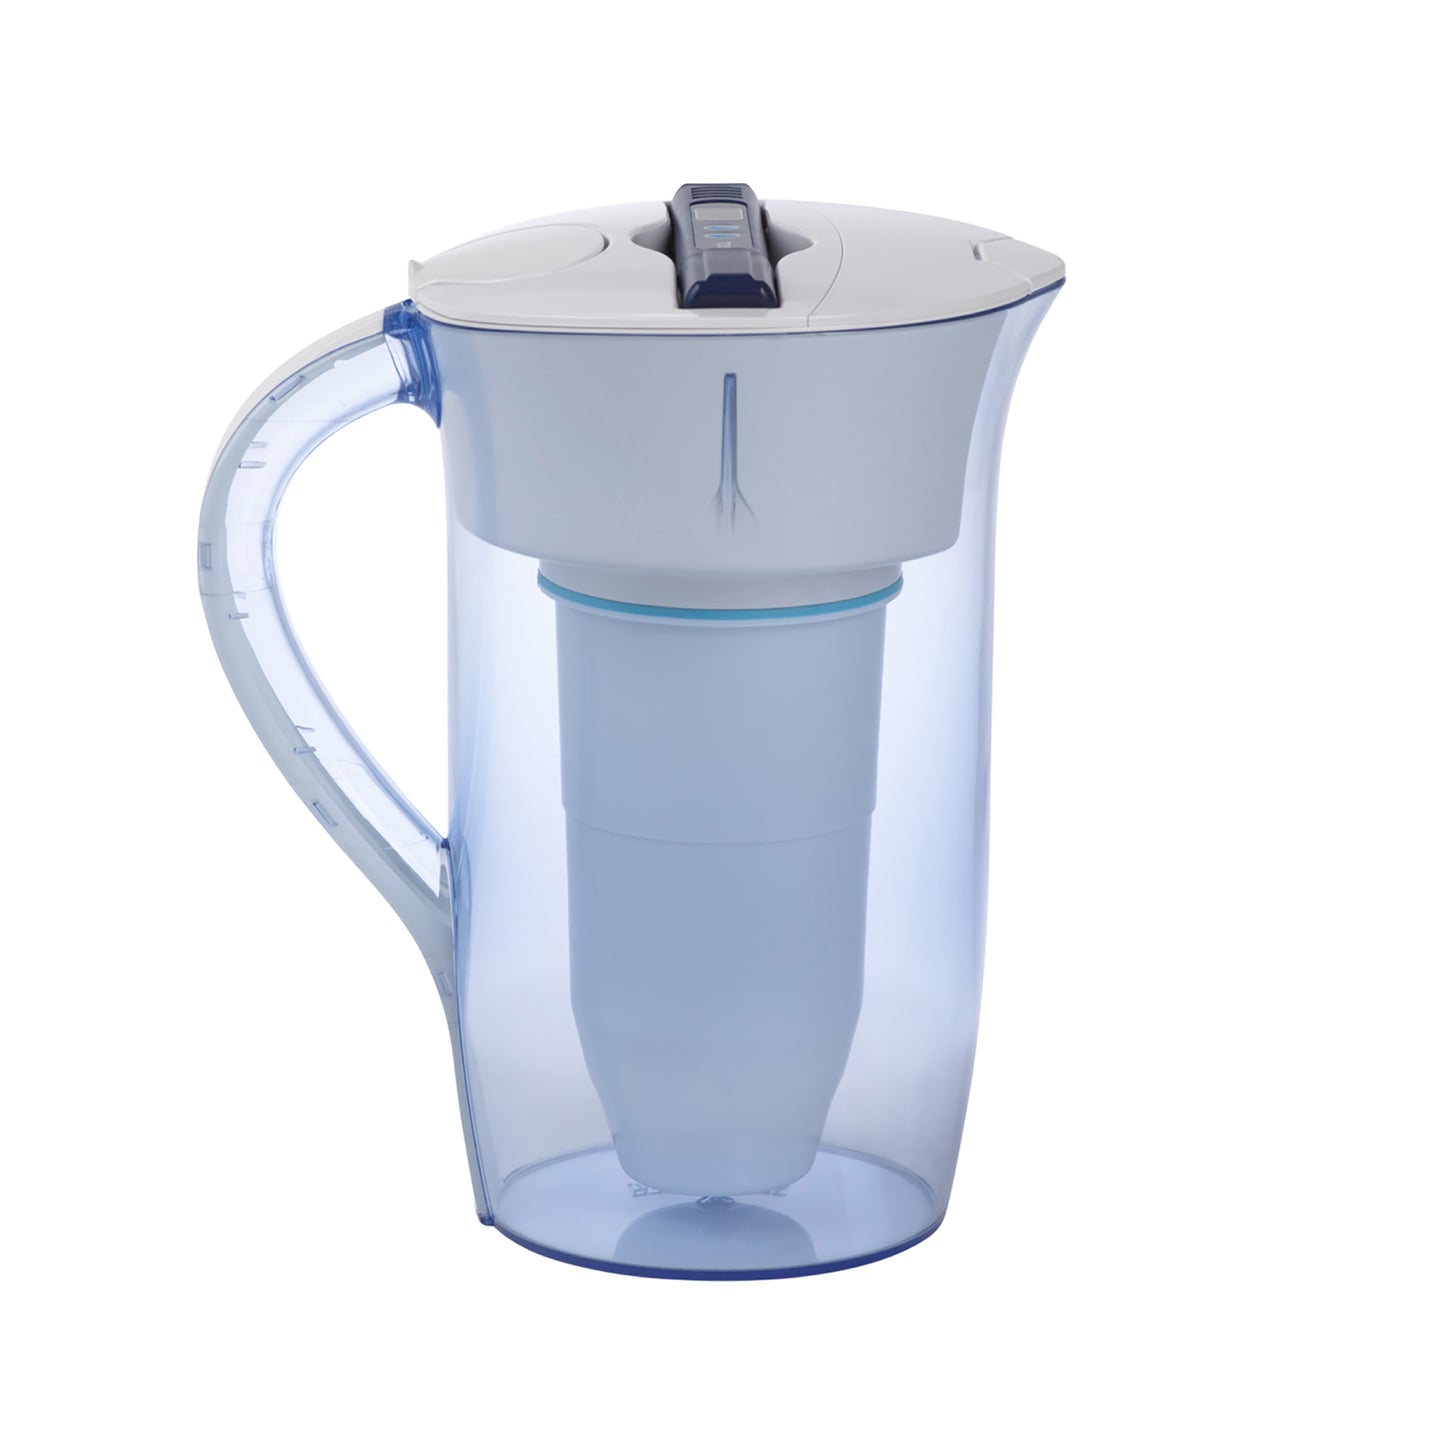 2.4 liter round water jug | 10 cup pitcher round (2,4 liter)